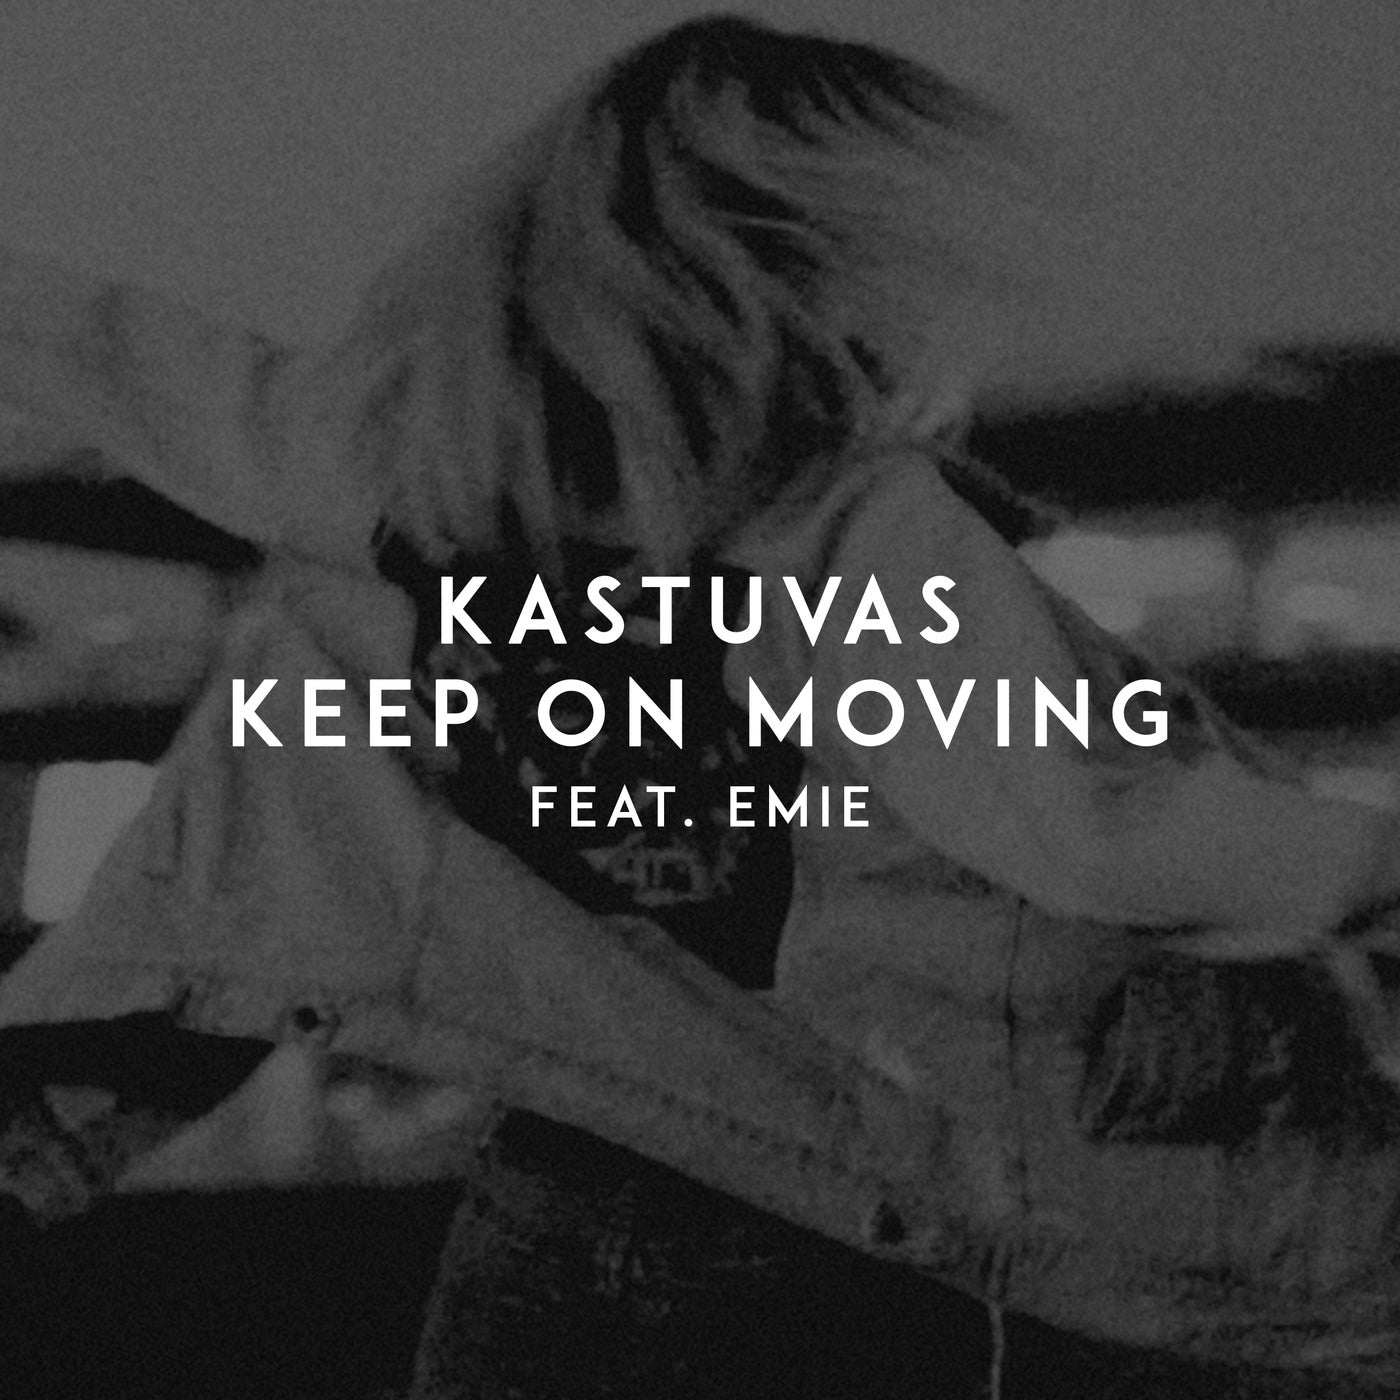 Kastuvas emie keep on moving. Keep on moving kastuvas. Keep on moving kastuvas feat. Emie. Kastuvas_Yigit_Unal_-_Milkshake. STARSTYLERS keep on moving.